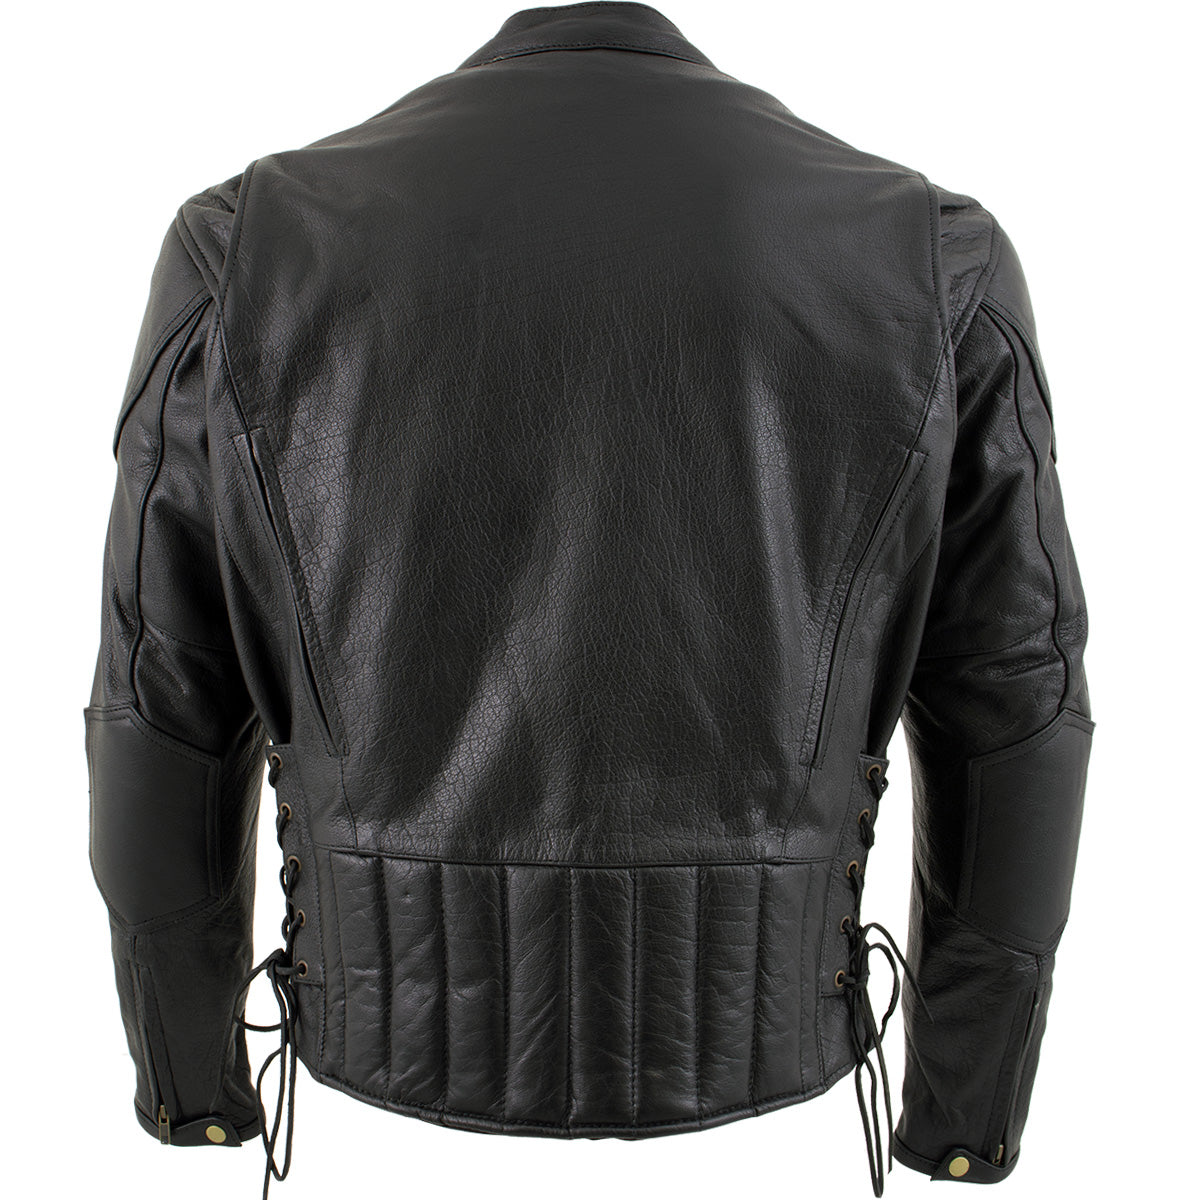 Xelement B7201 'Speedster' Men's Top Grade Leather Motorcycle Jacket